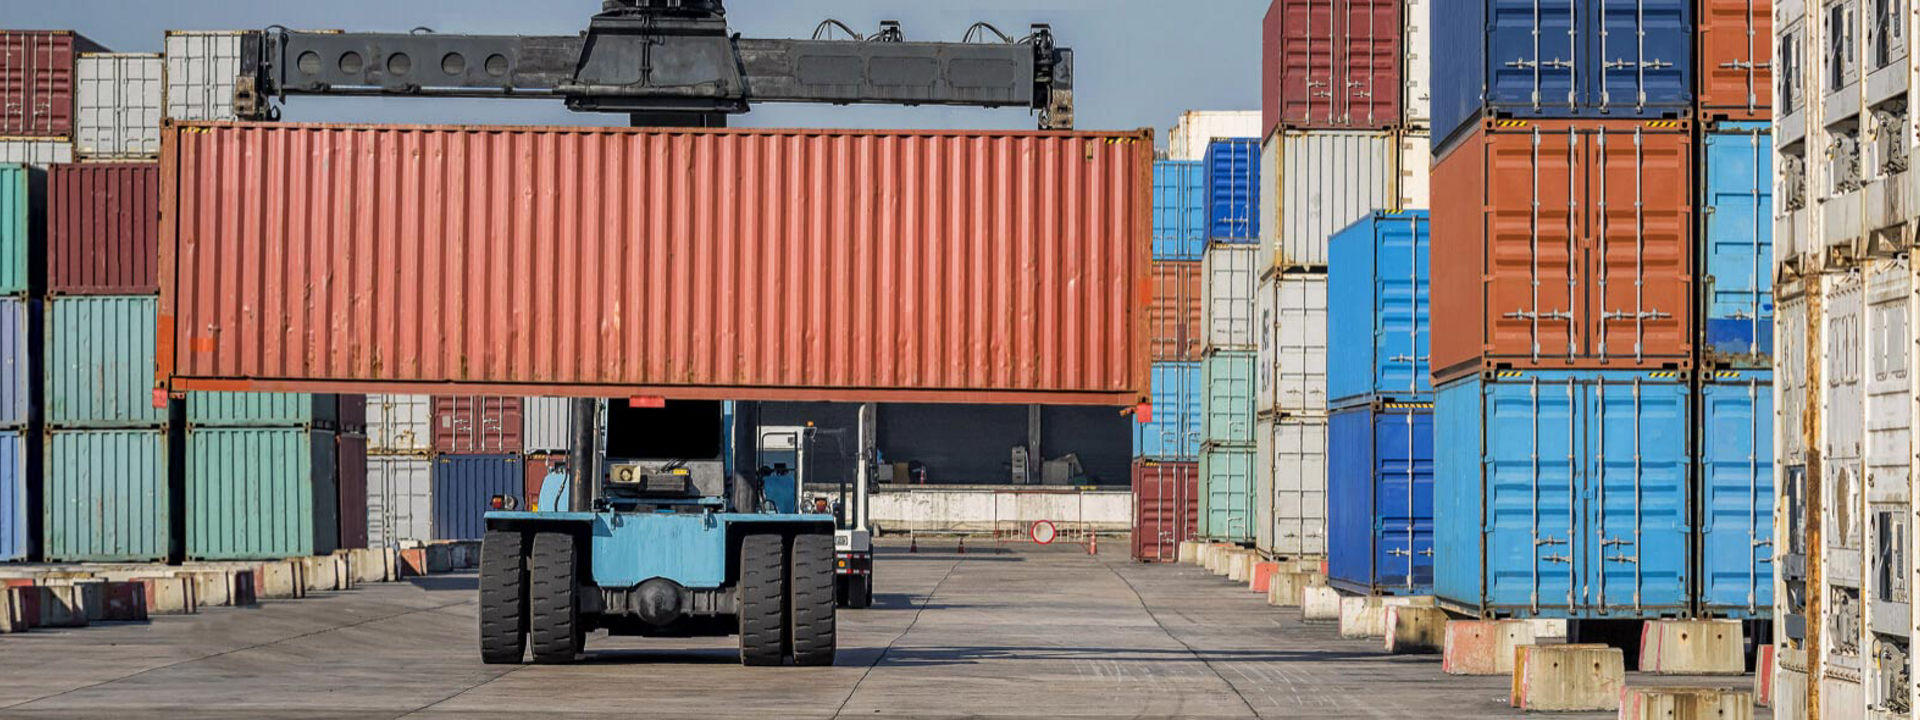 En gaffeltruck utrustad med Bridgestone entreprenaddäck flyttar transportcontainrar i en stor industrihamn.